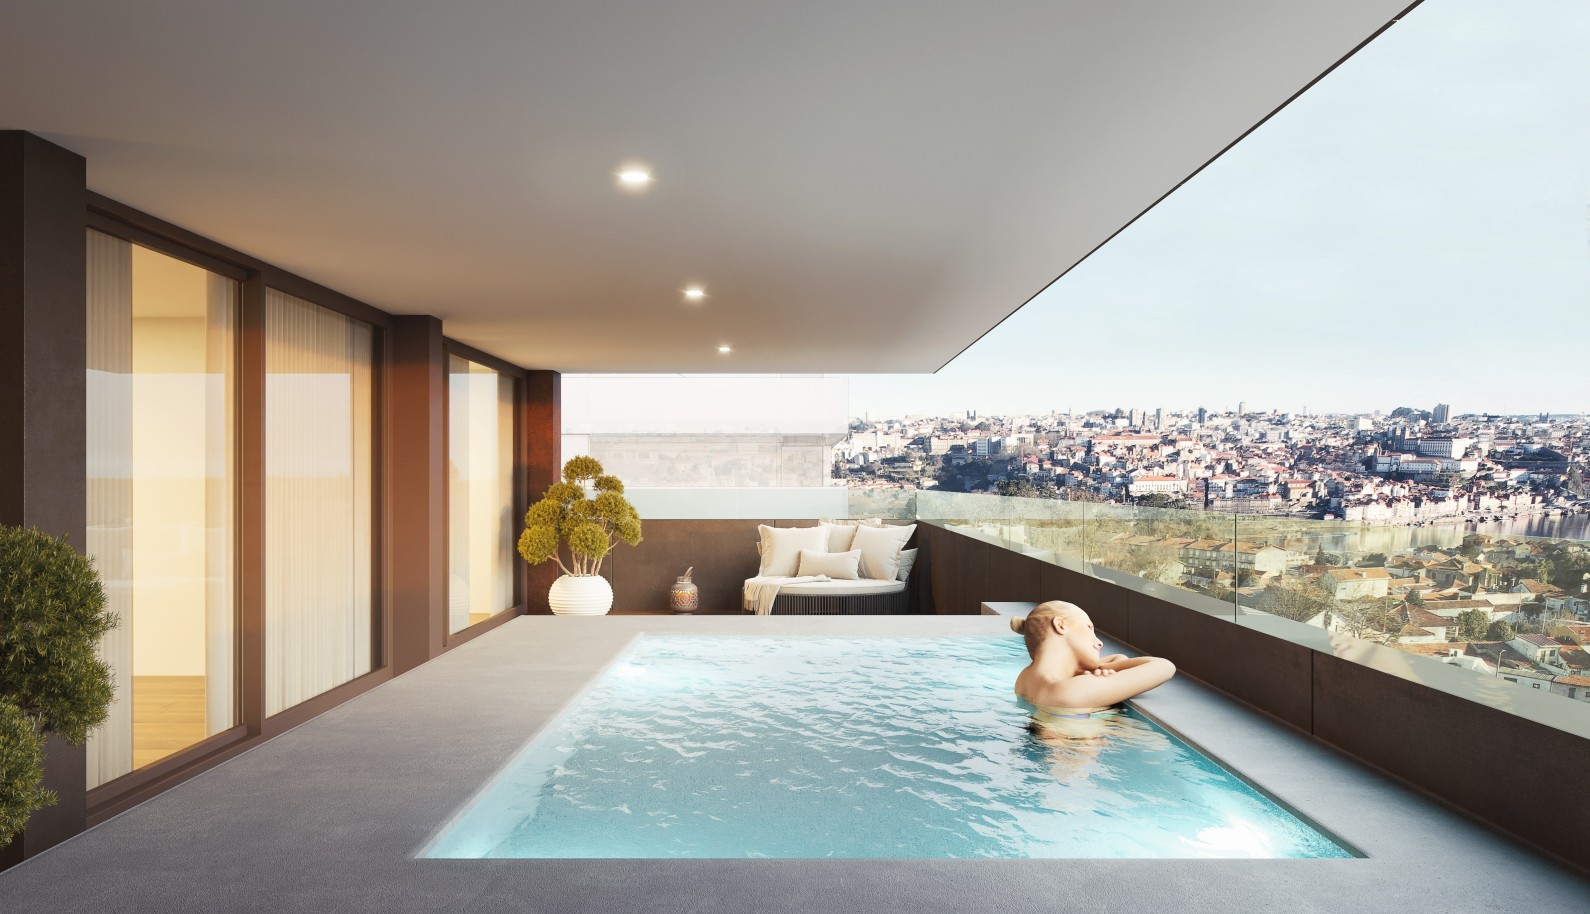 Apartamento novo com piscina, para venda, em Gaia, Porto, Portugal_234532